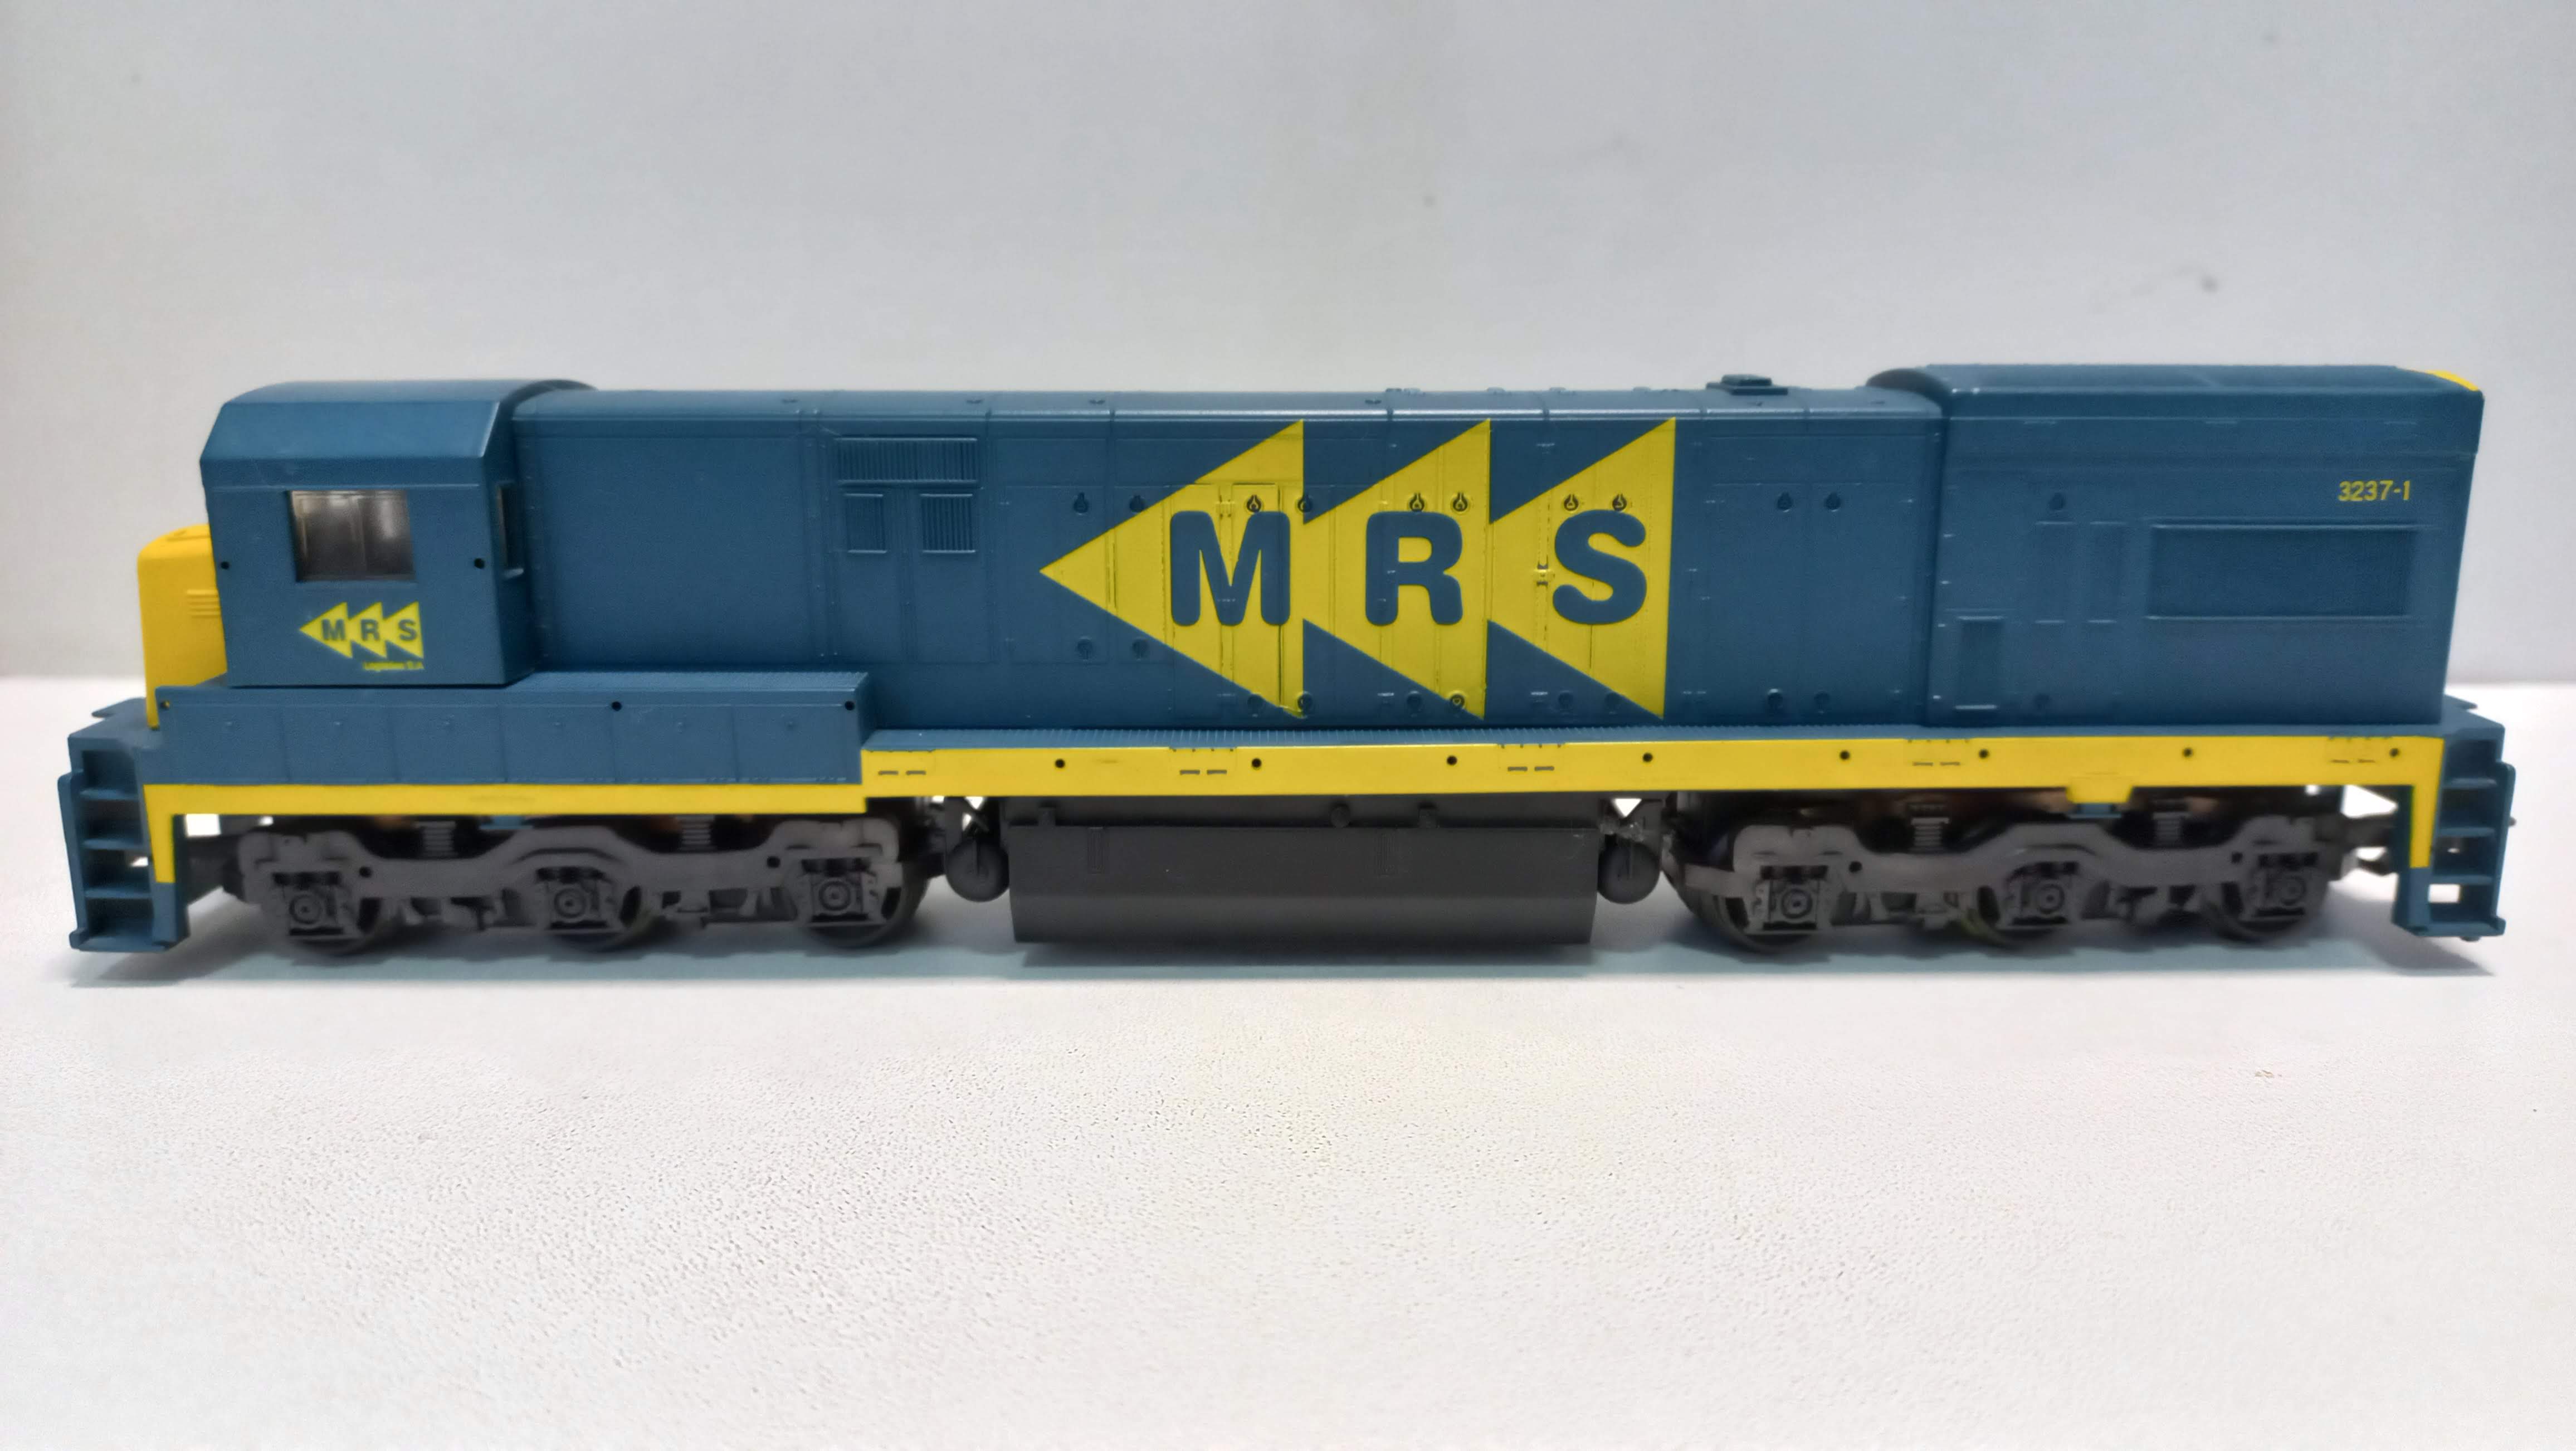 Locomotiva U23 C MRS - 3067 semi-nova na caixa original